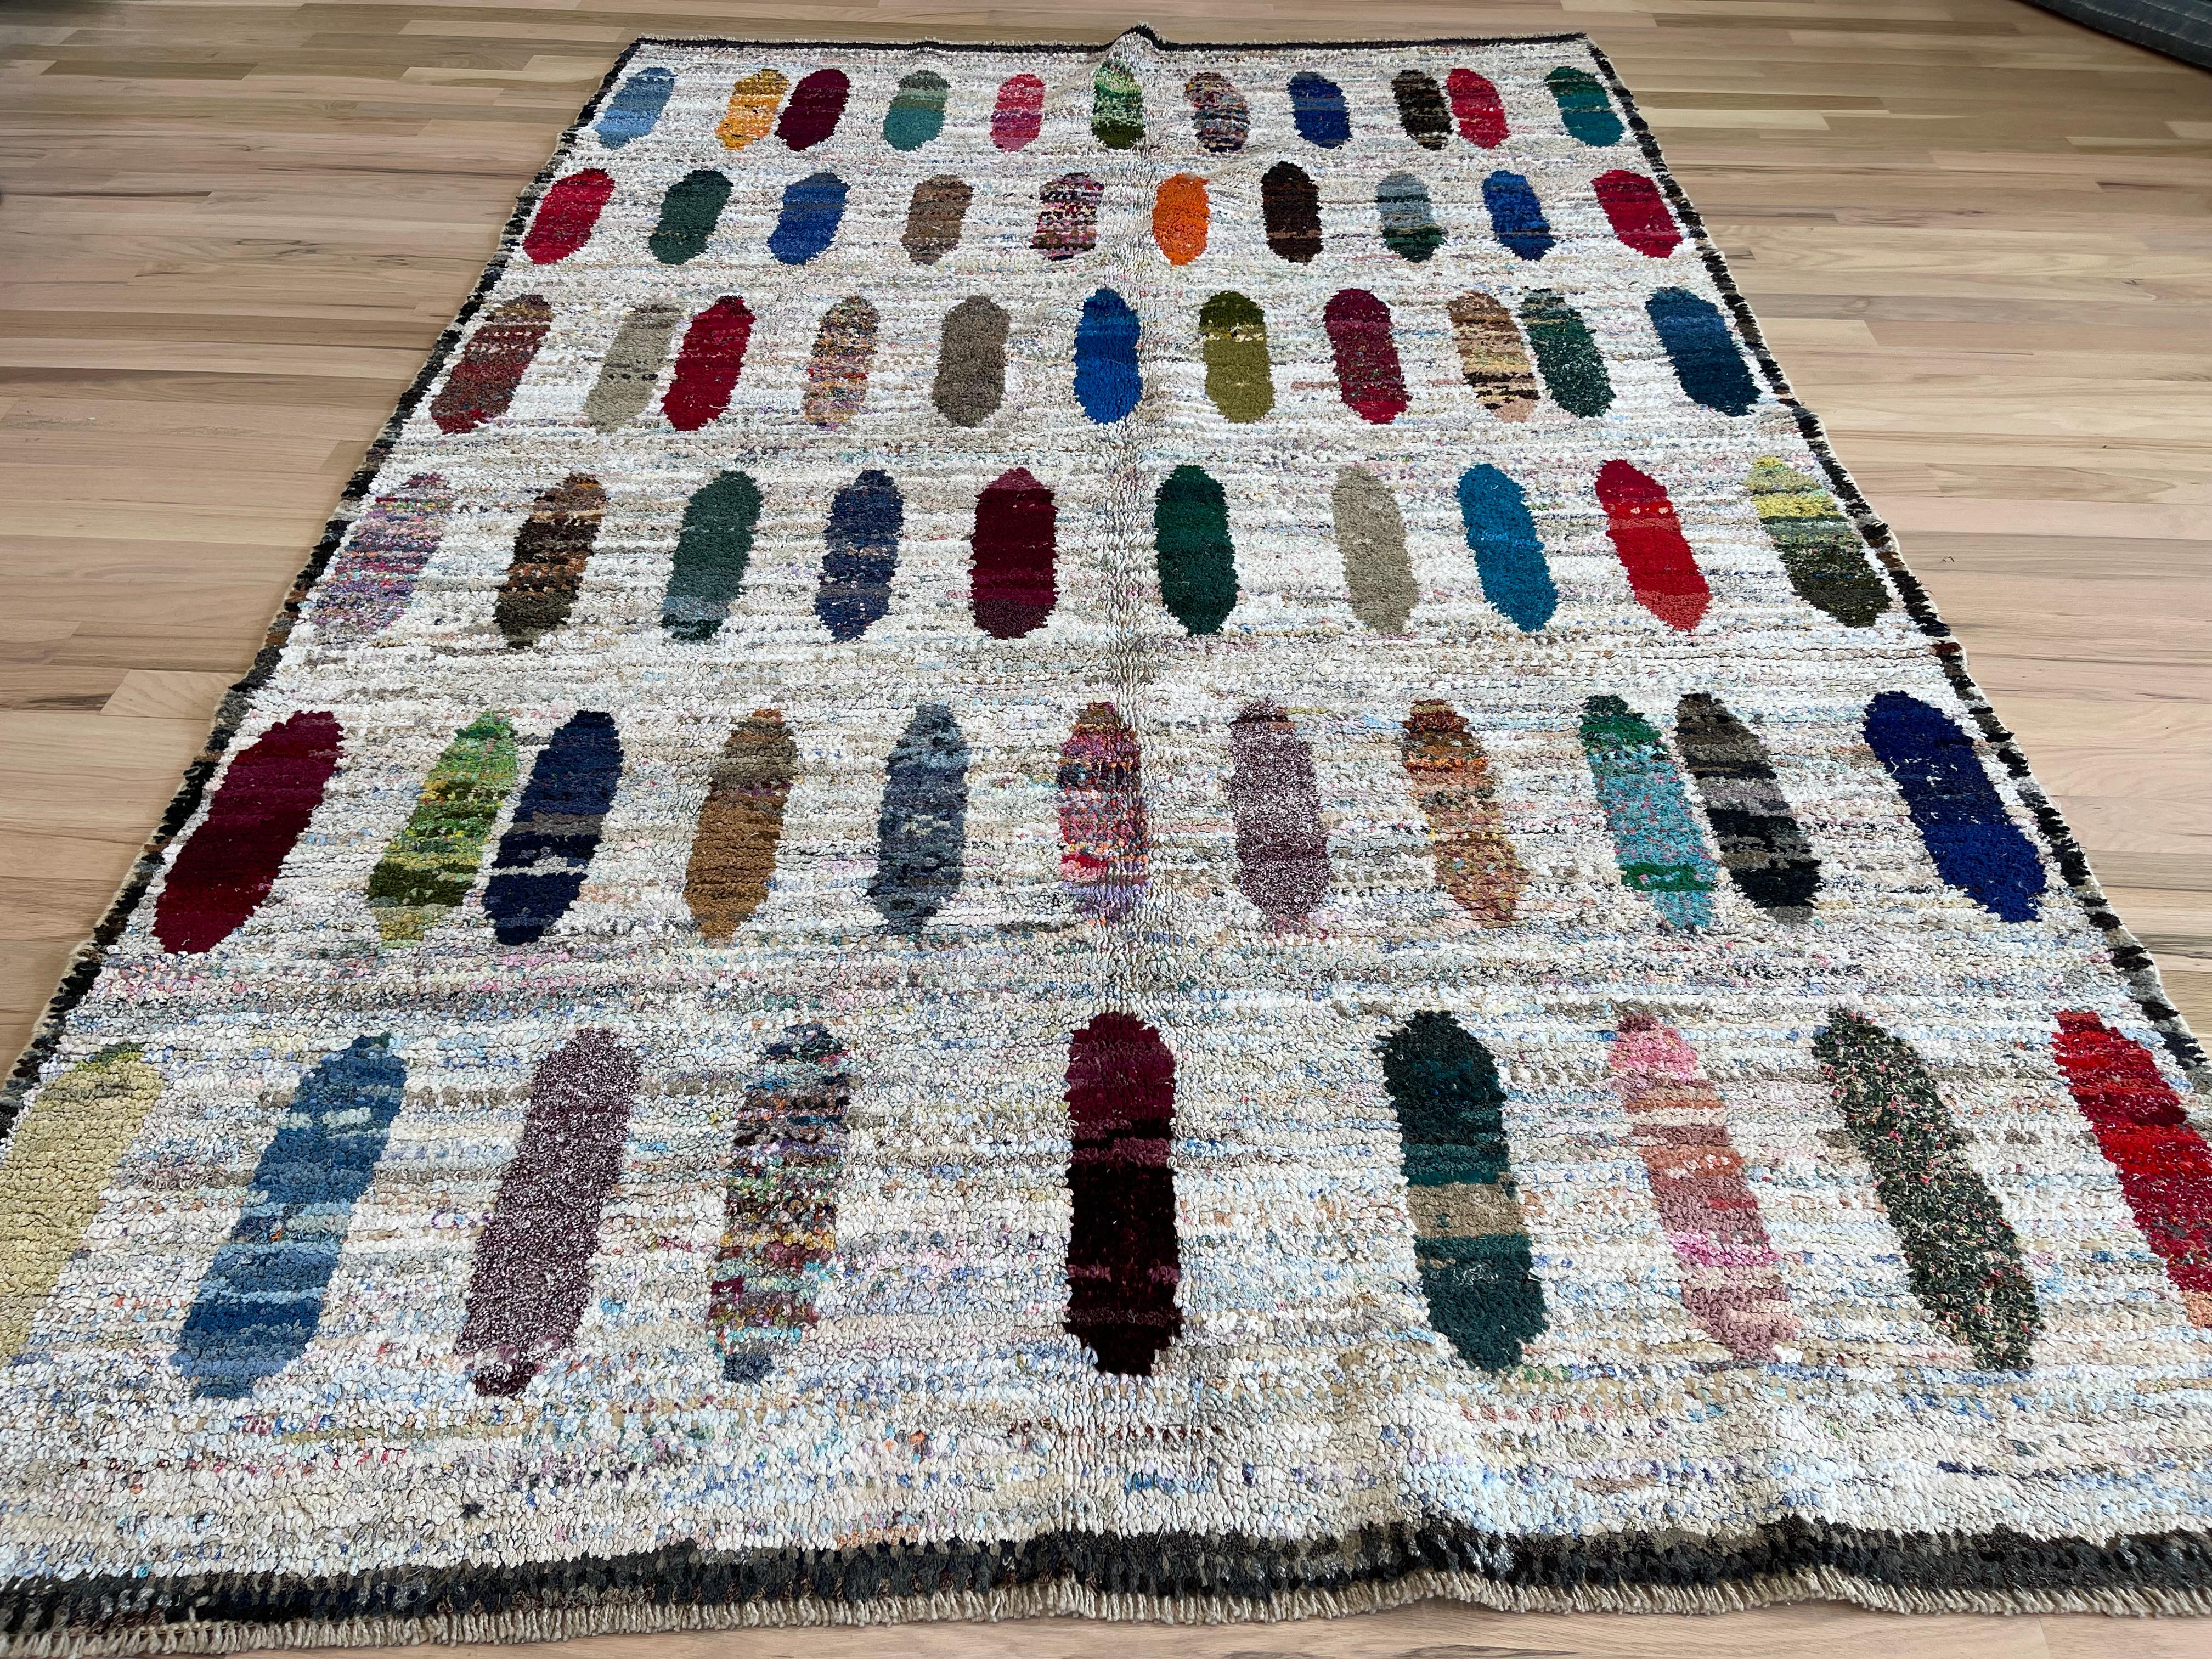 Dieser türkische Teppich zeigt ein farbenfrohes geometrisches Muster  so dass Sie Ihr Dekor wechseln können. Verleihen Sie jedem Raum einen Hauch von Stil und haben Sie gleichzeitig die Möglichkeit, die Dinge nach Lust und Laune zu verändern. Dieser